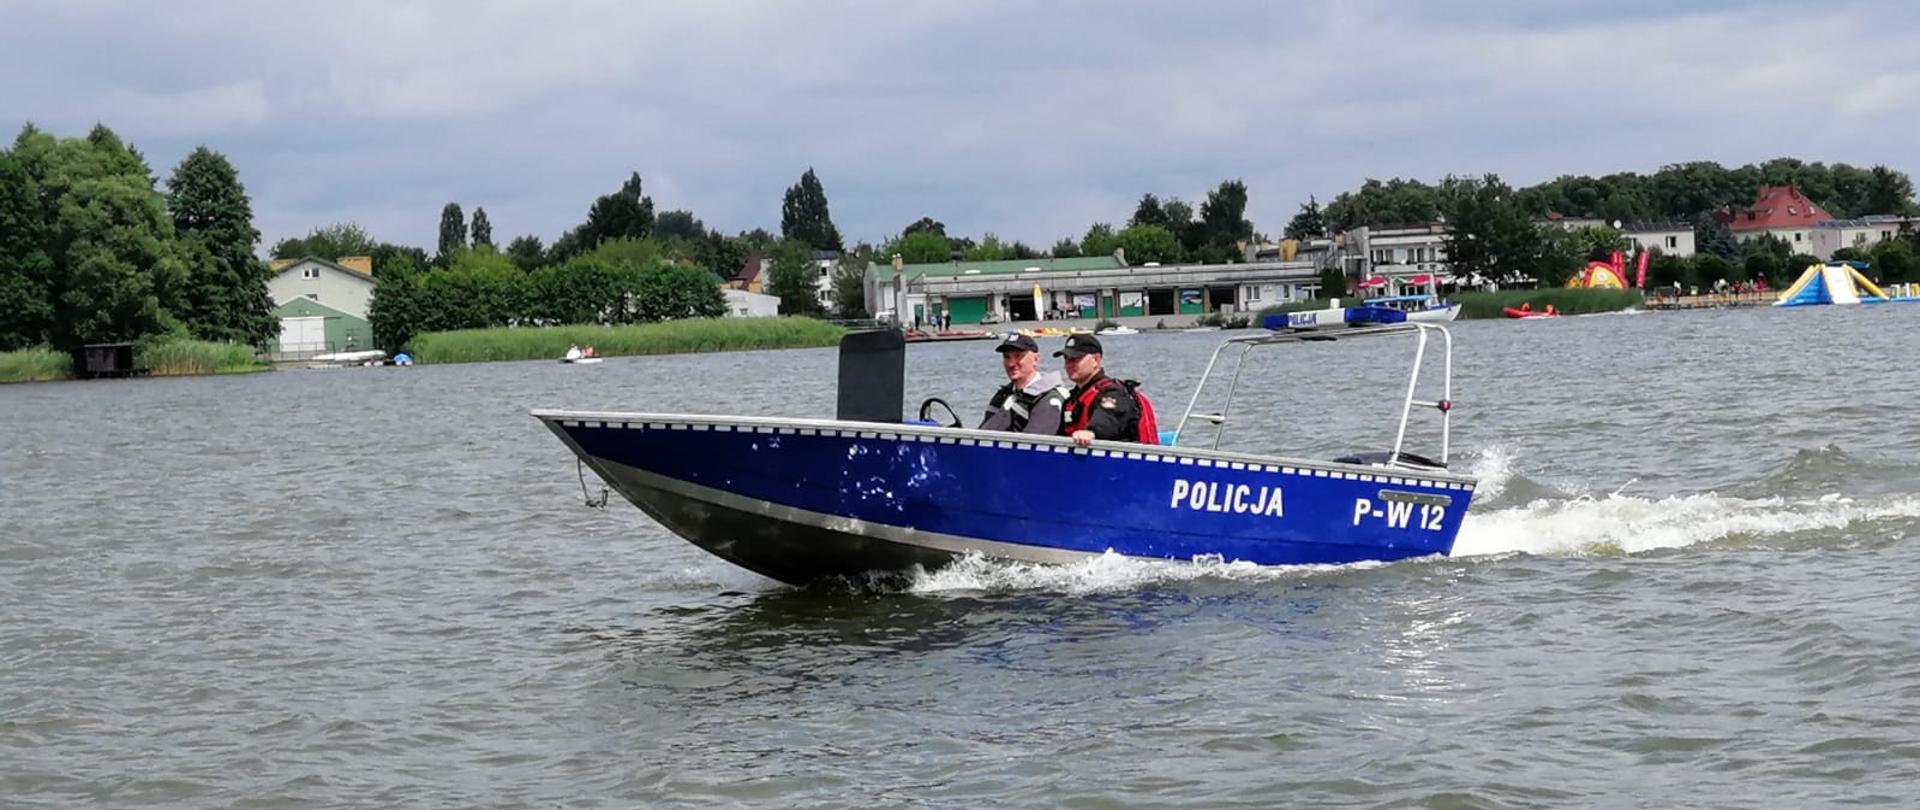 Zdjęcie przedstawia policjanta i strażaka w łodzi policyjnej podczas patrolu na jeziorze Raduń